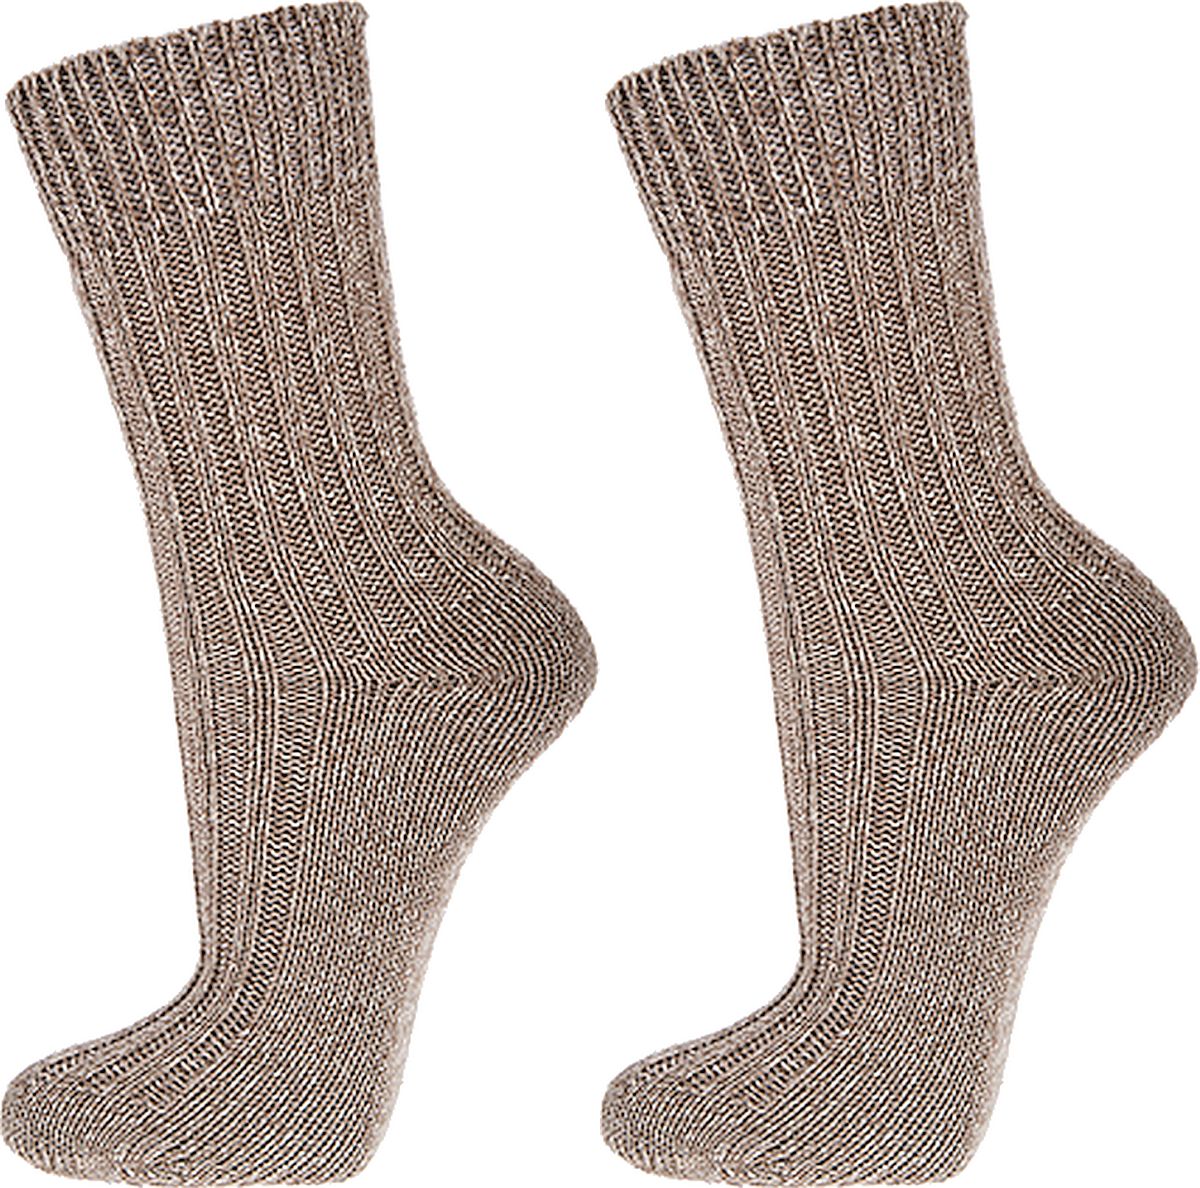 100%-Baumwolle Socken schöne dicke Ware, 5er-Teilung   3  Paar